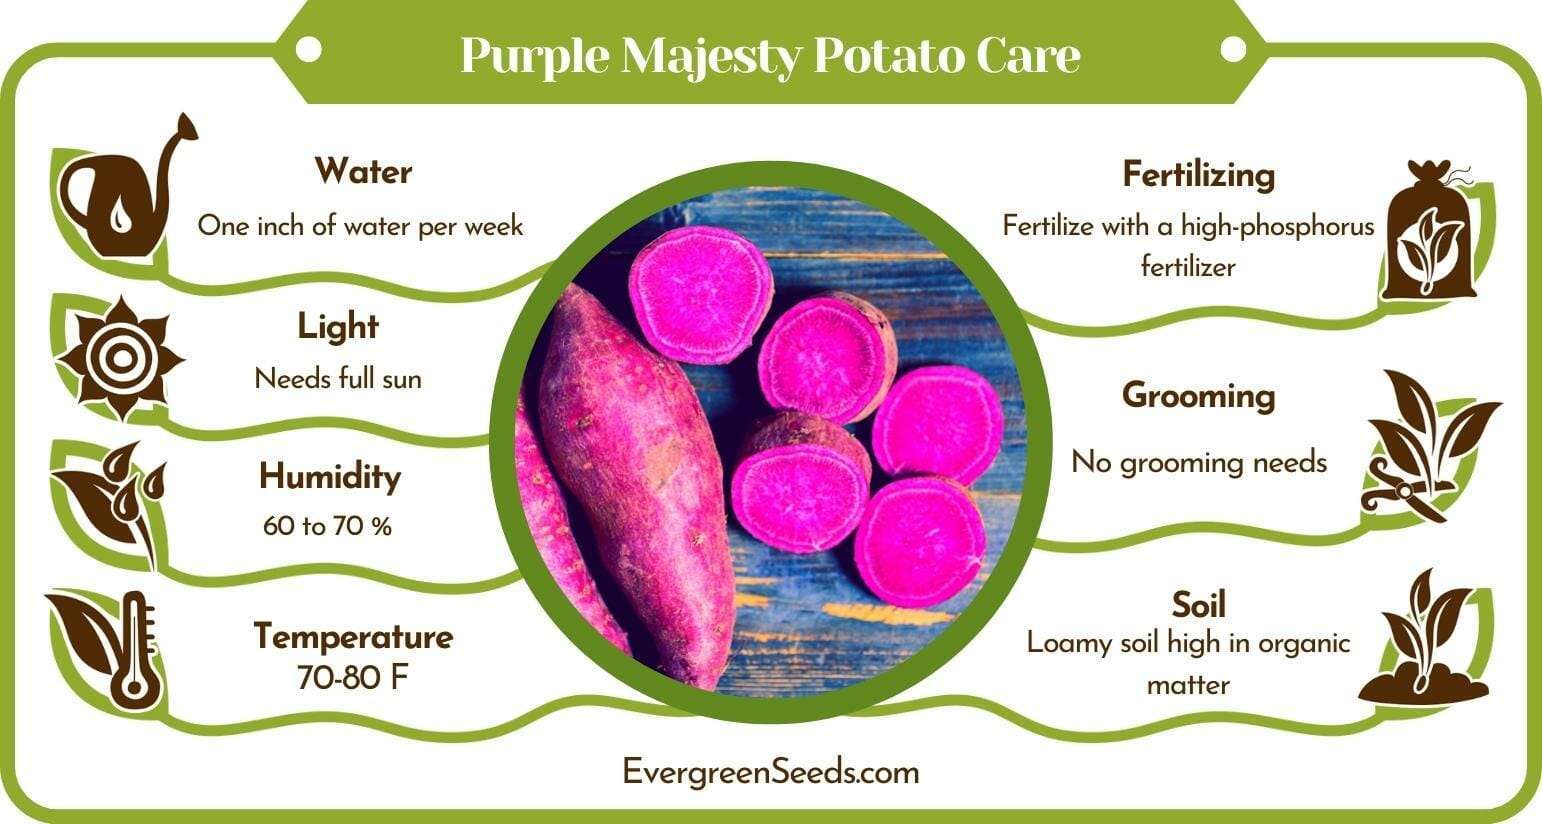 Purple Majesty Potato Care Infographic